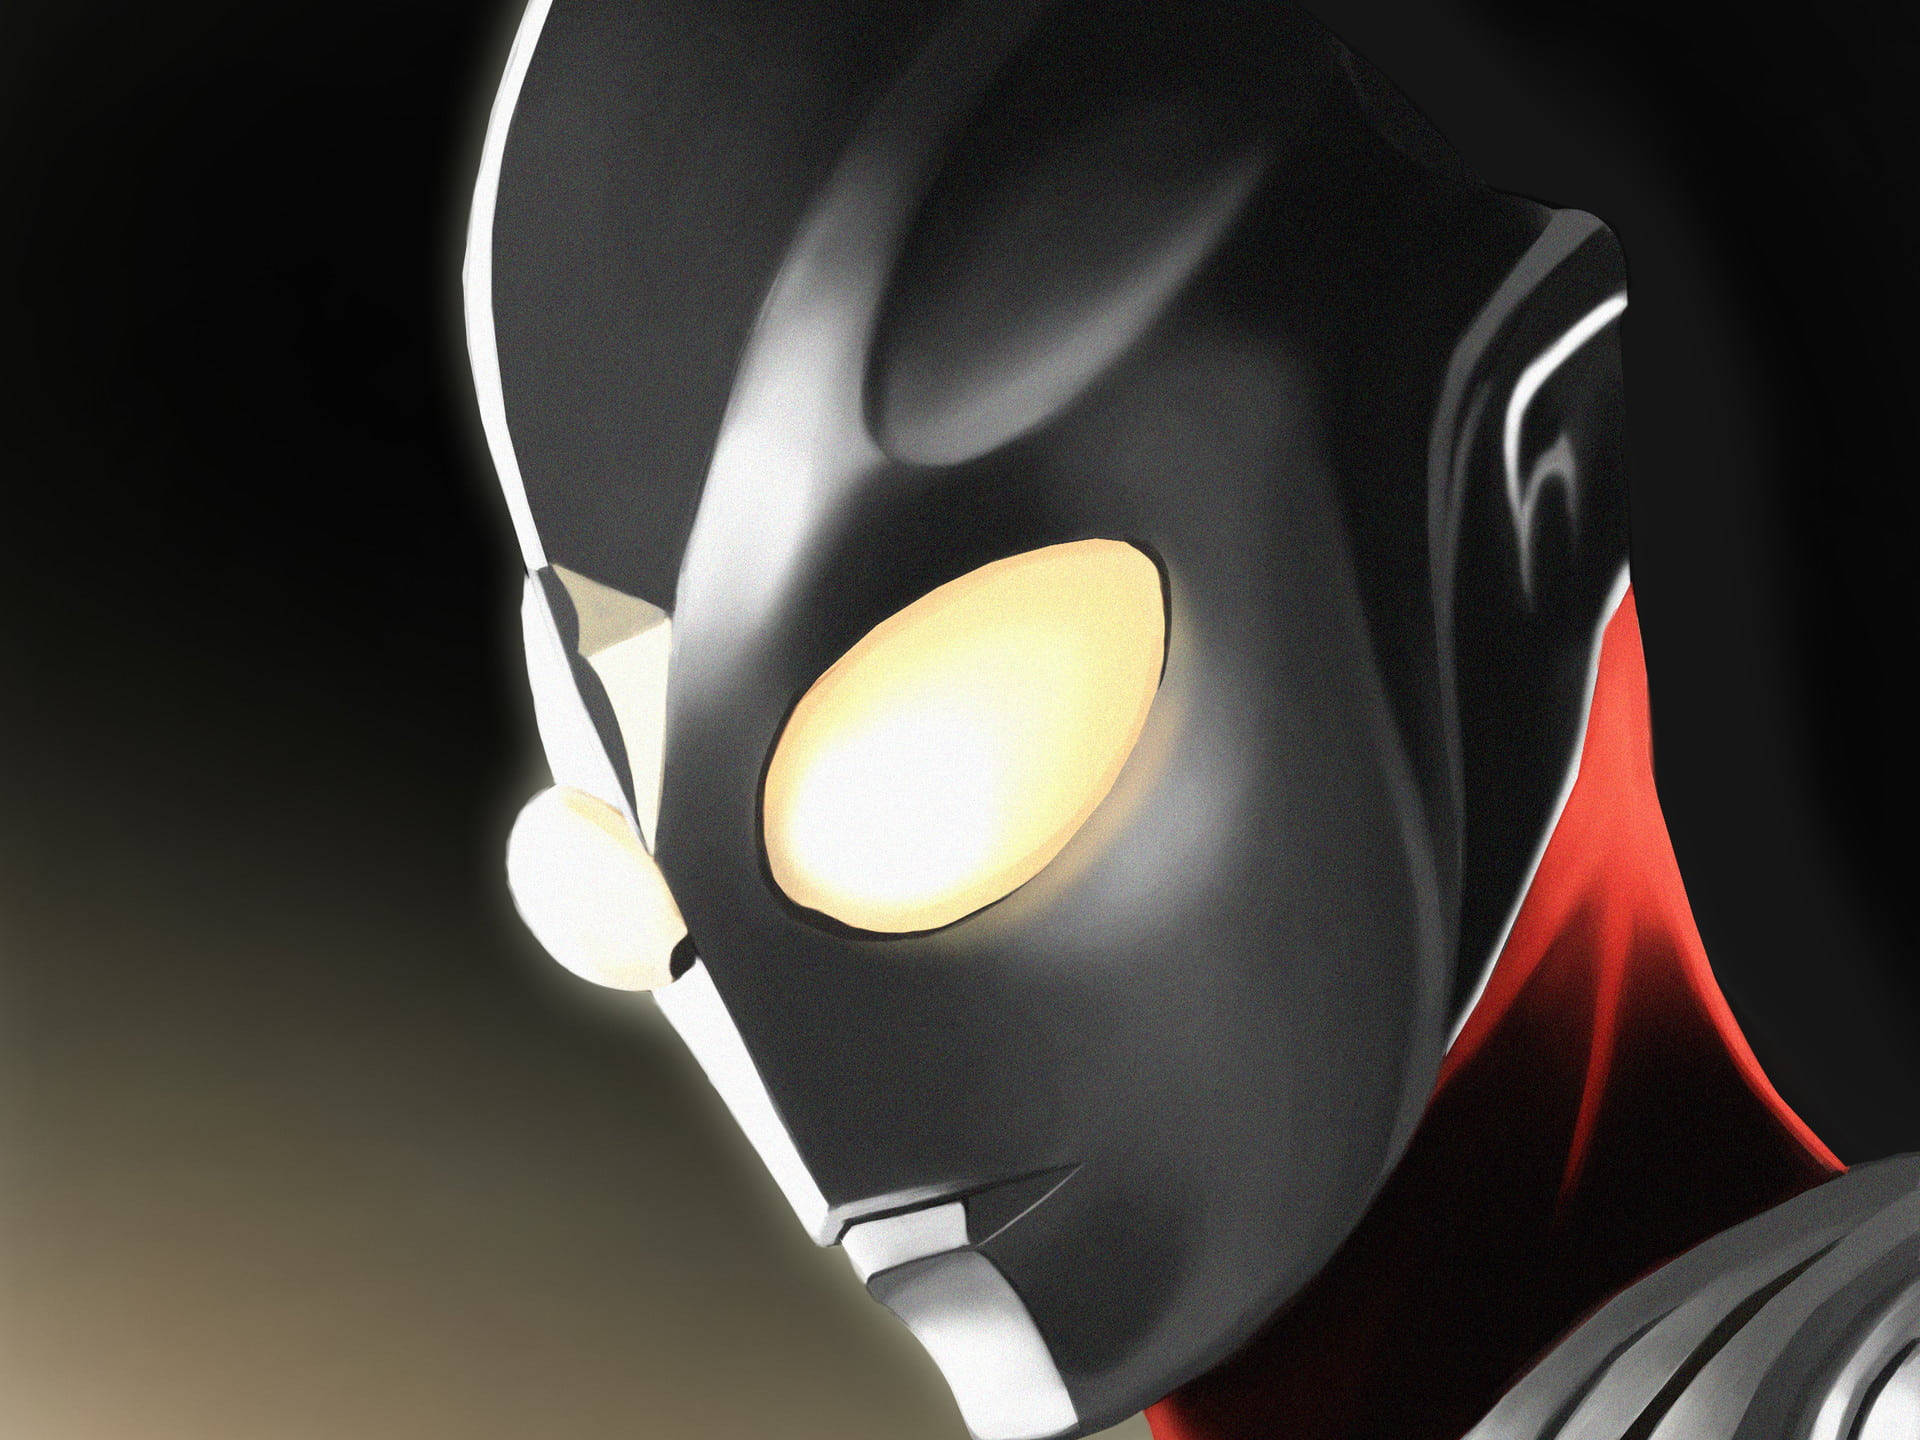 Ultraman Zero Beyond Phone Wallpaper by WallpapperUltra16 on DeviantArt